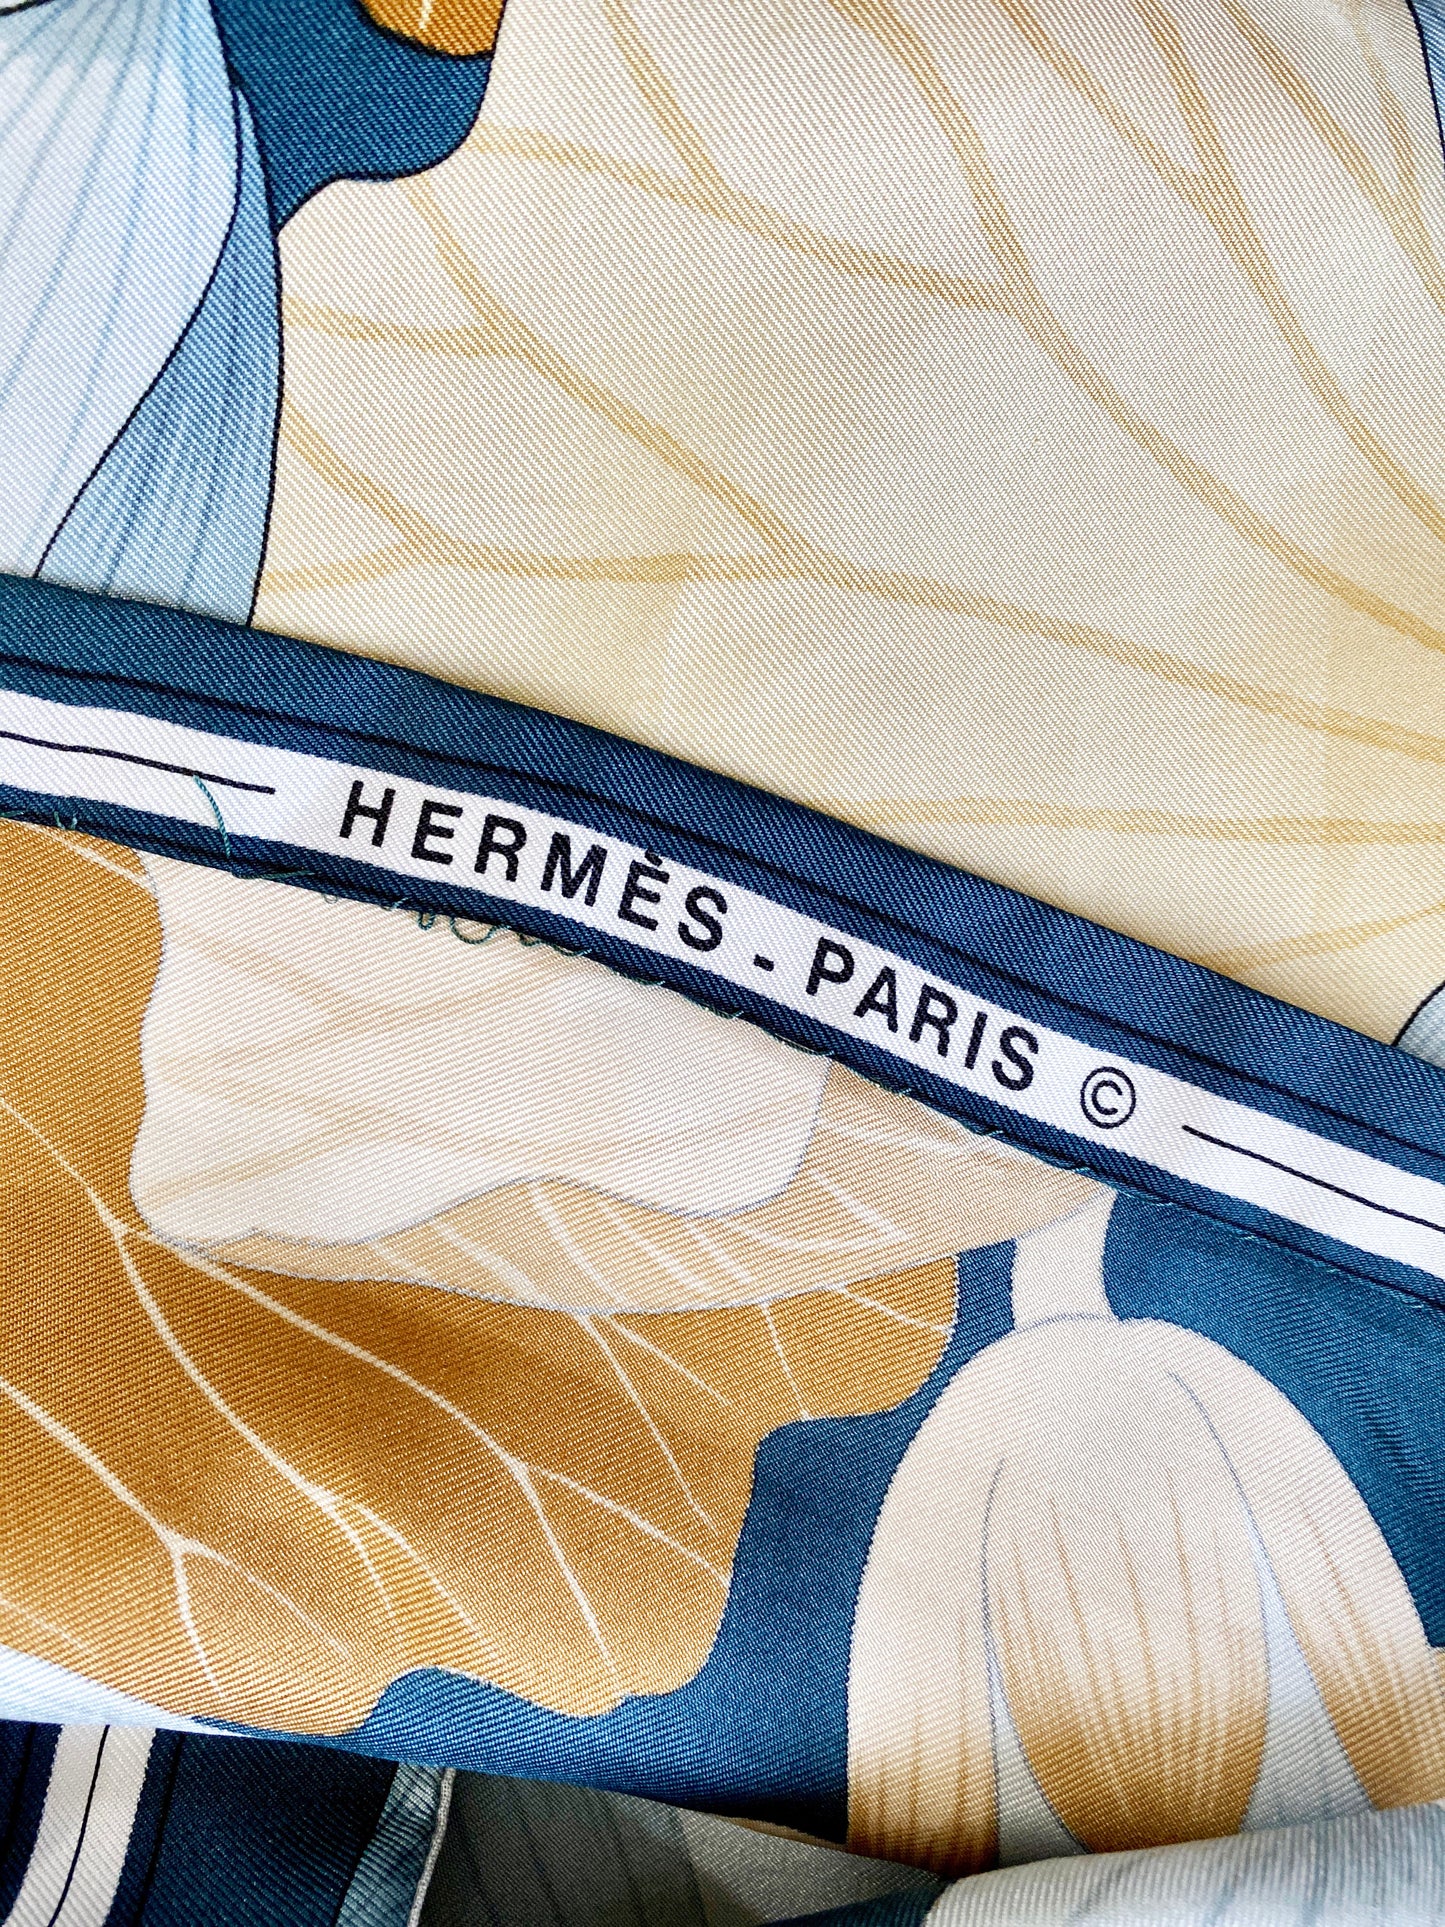 1970s Hermes Silk Blouse Fleurs de Lotus Floral Vintage Scarf Shirt 1976 Christiane Vauzelles French Designer / Size Small